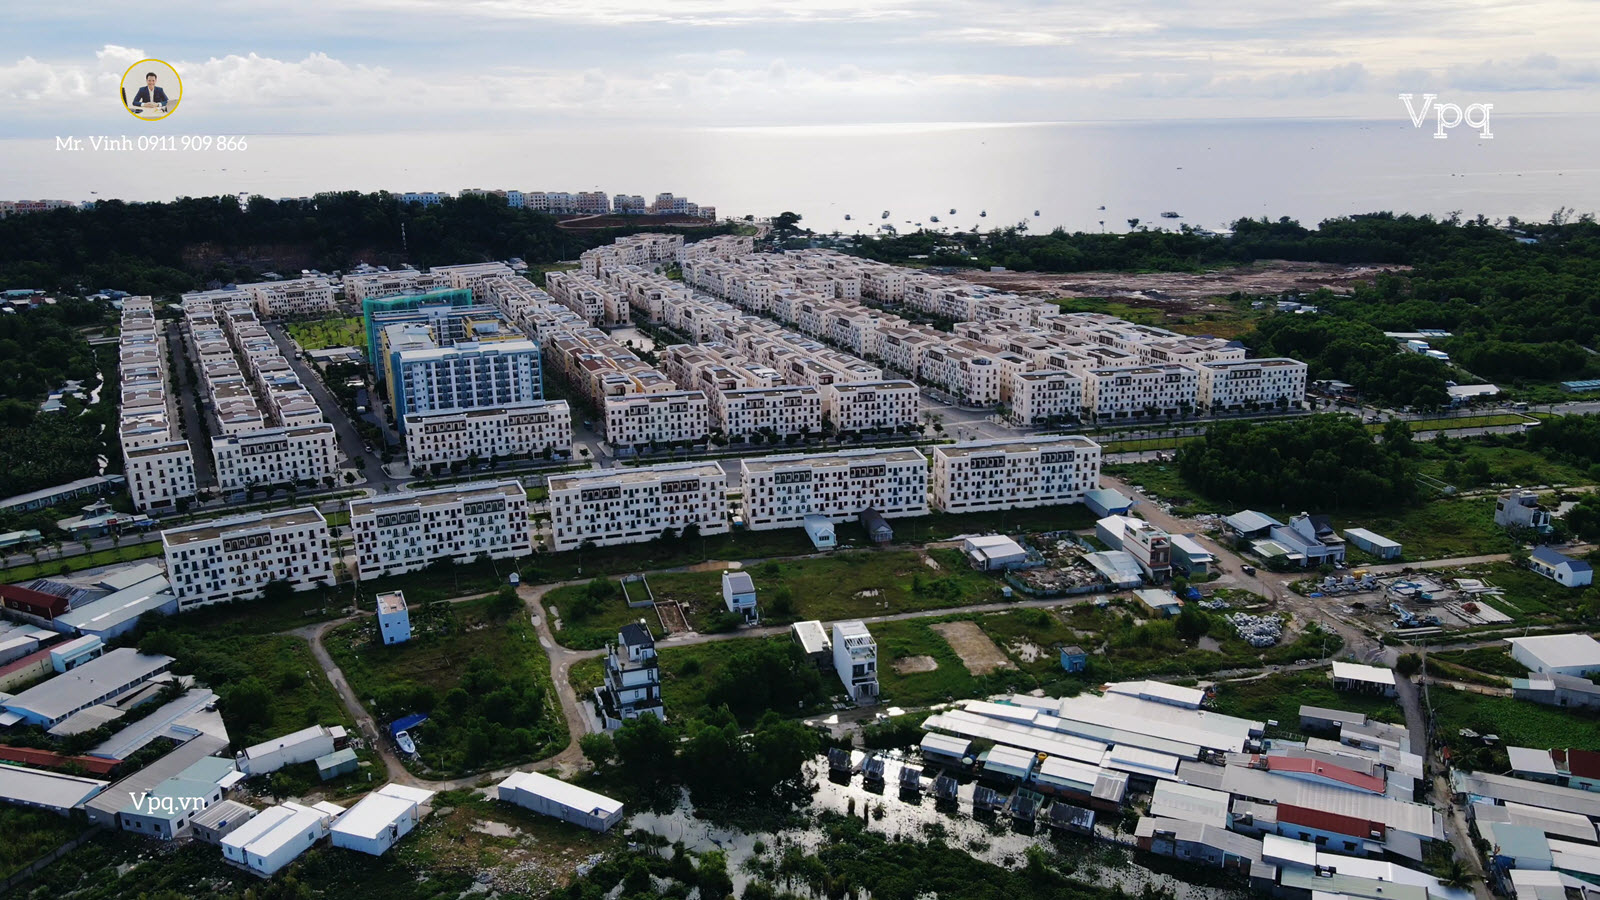  Hình ảnh thực tế đất nền  khu tái định cư An Thới Phú Quốc T11.2022 - Ảnh 3